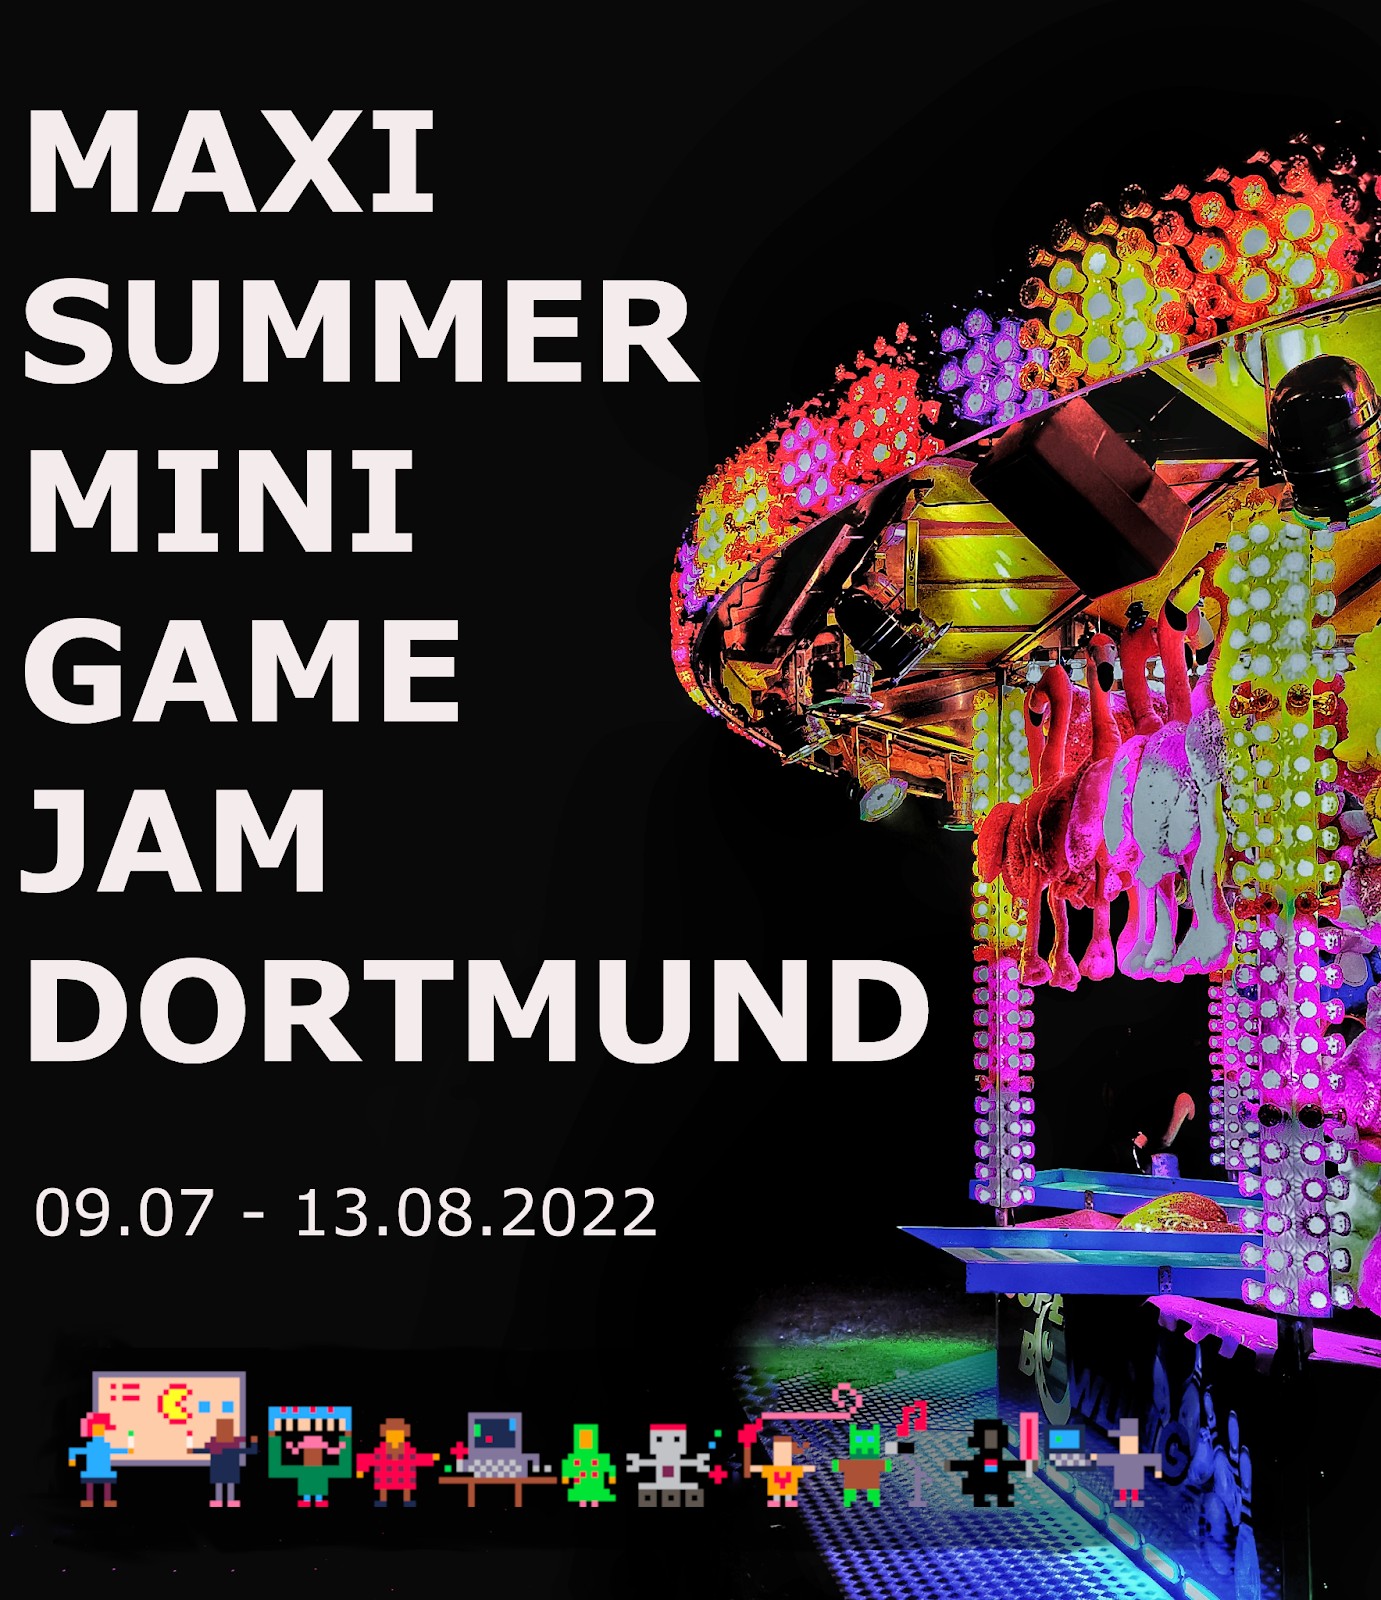 Übersaturierte Nächtliche Kirmesstimmung. Dazu der Text: Maxi Summer Mini Game Jam Dortmund 09.07. bis 13.08.2022